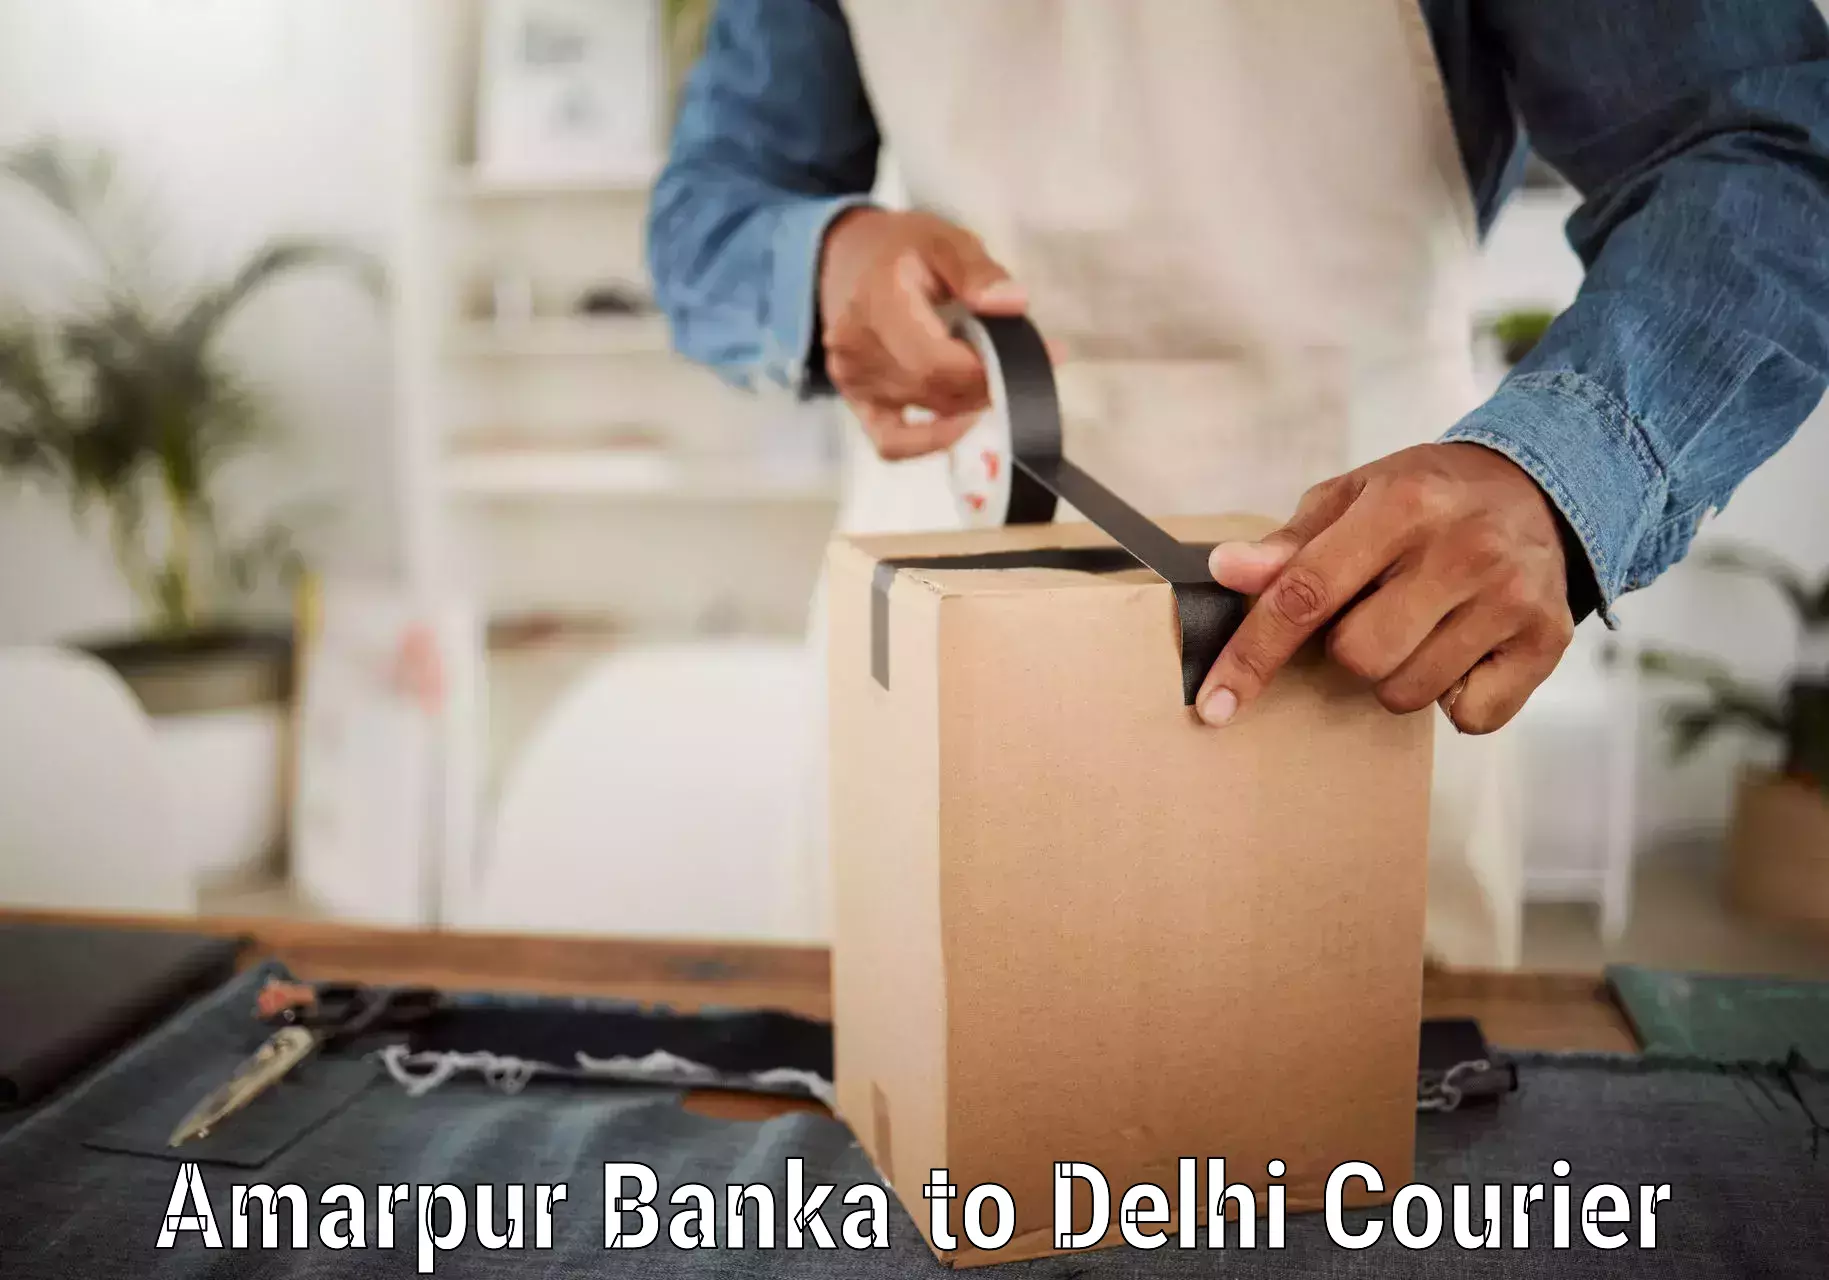 Courier service comparison Amarpur Banka to Delhi Technological University DTU